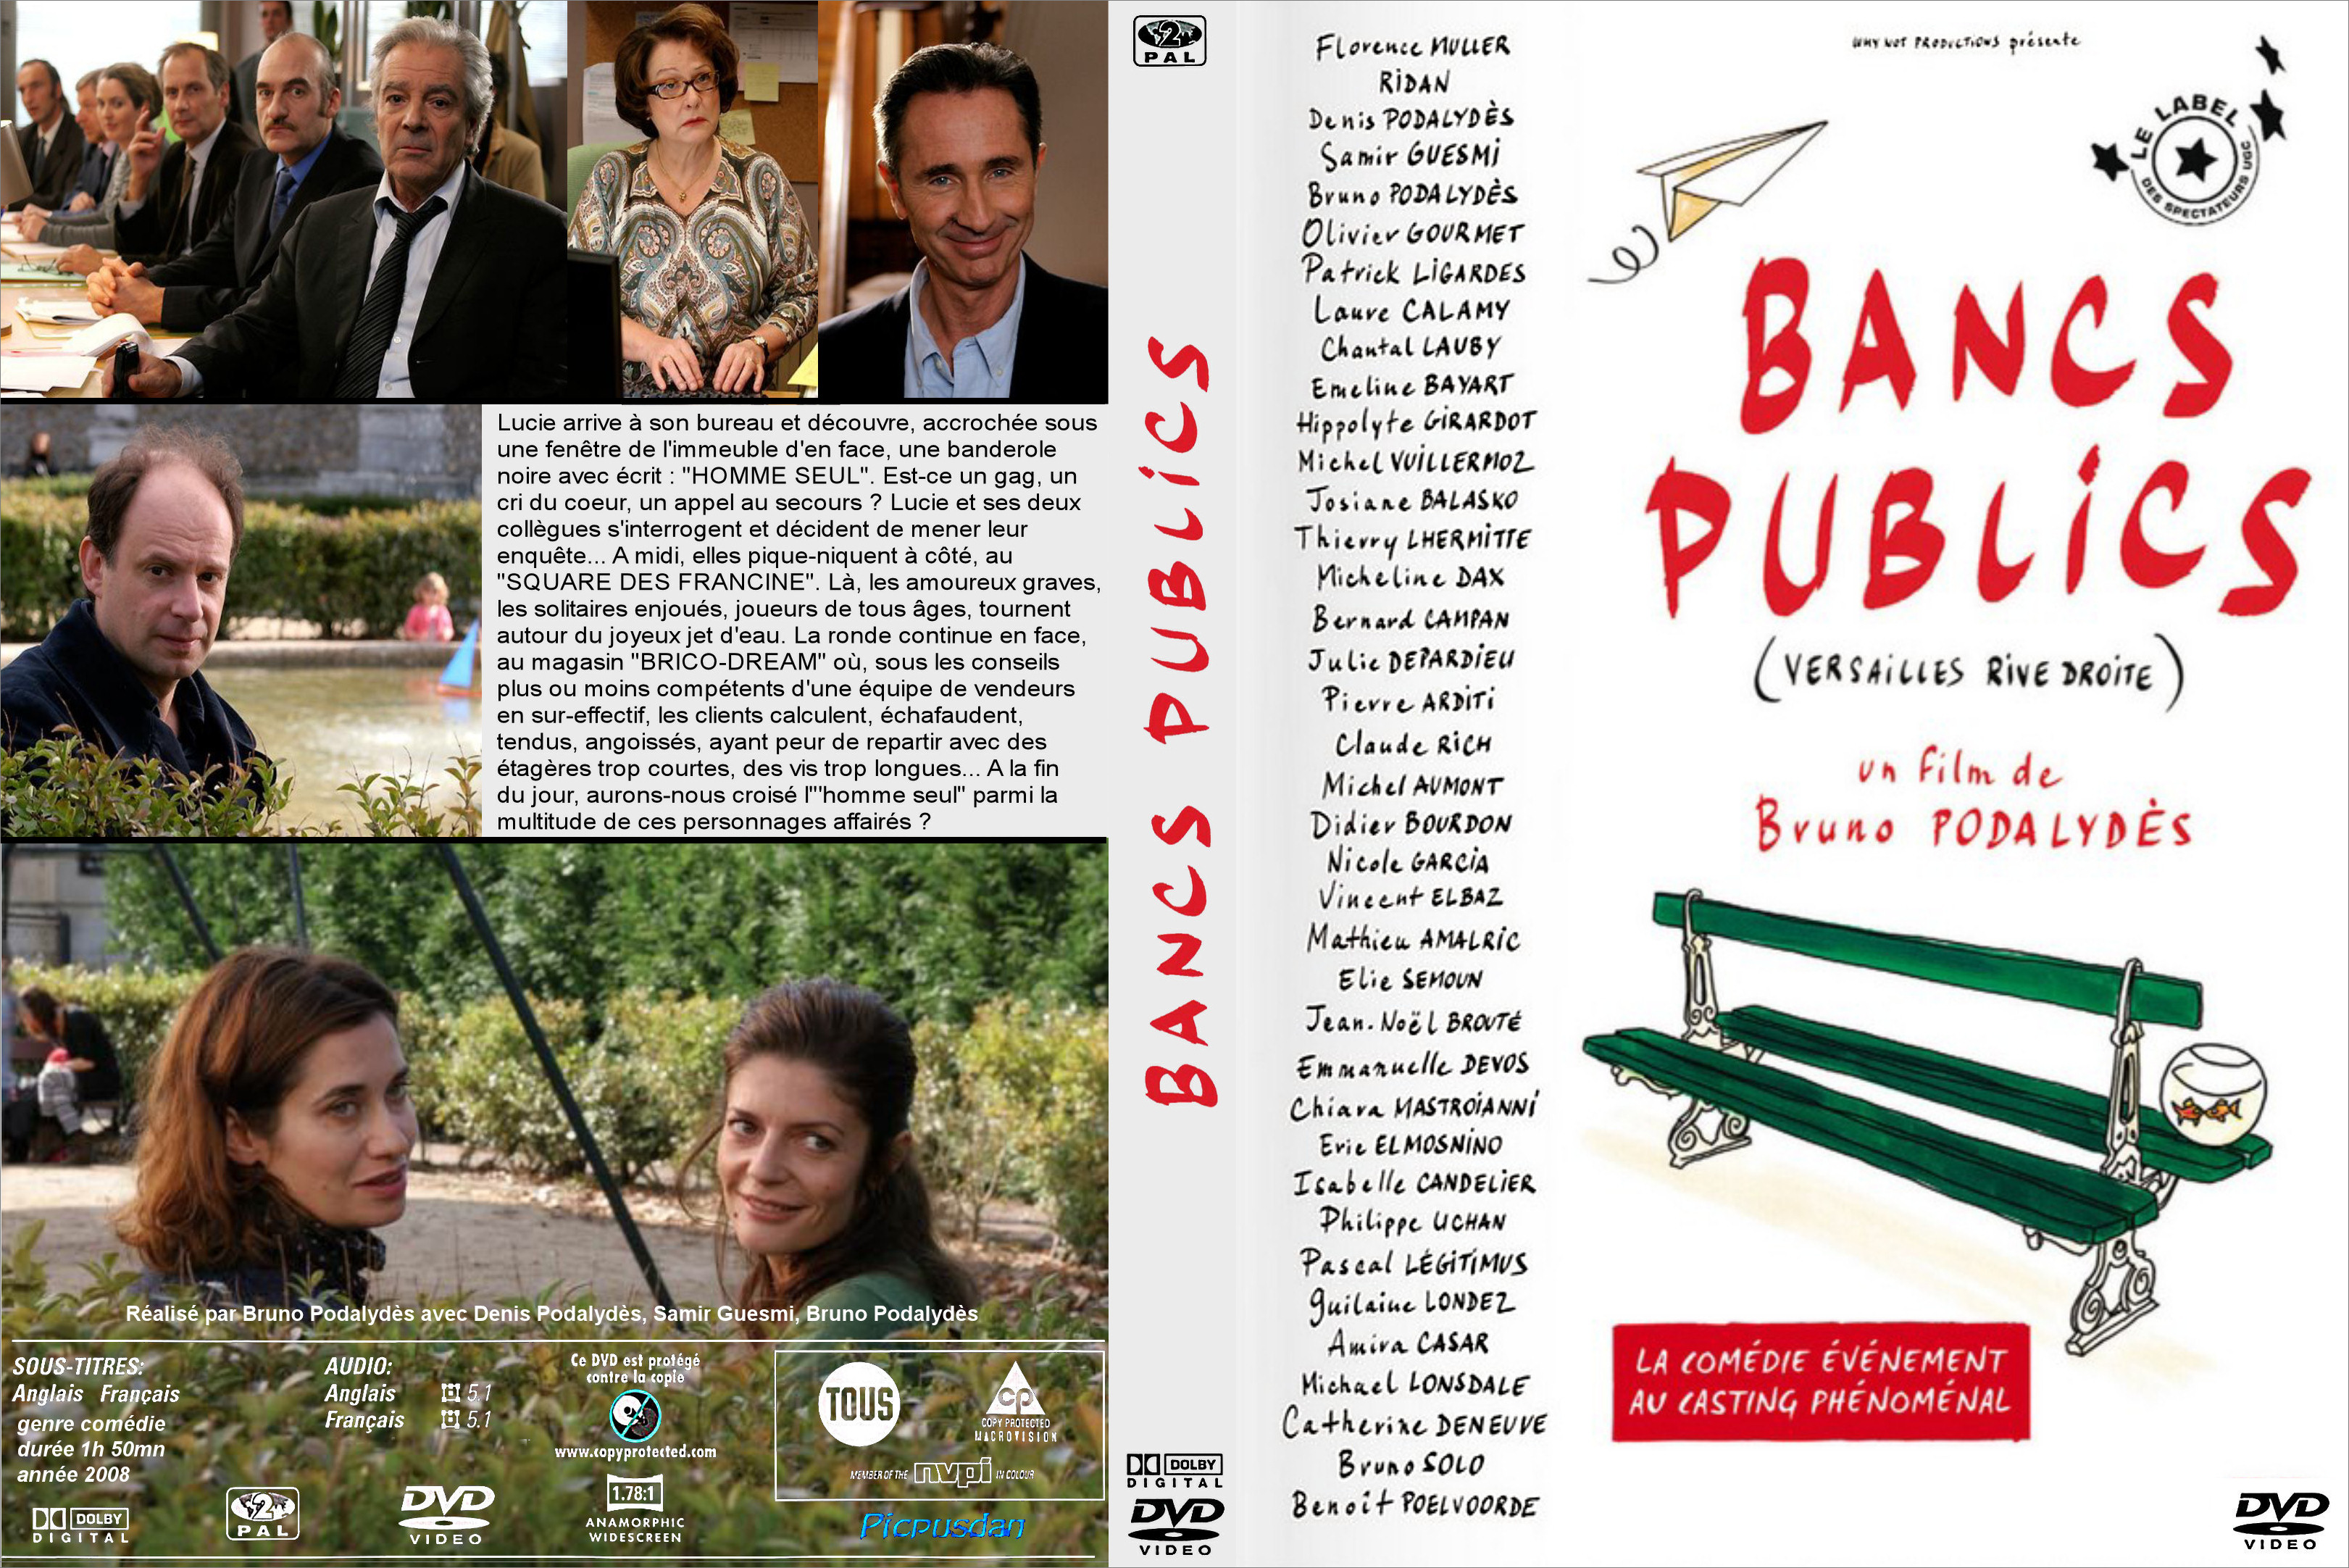 Jaquette DVD Bancs publics custom